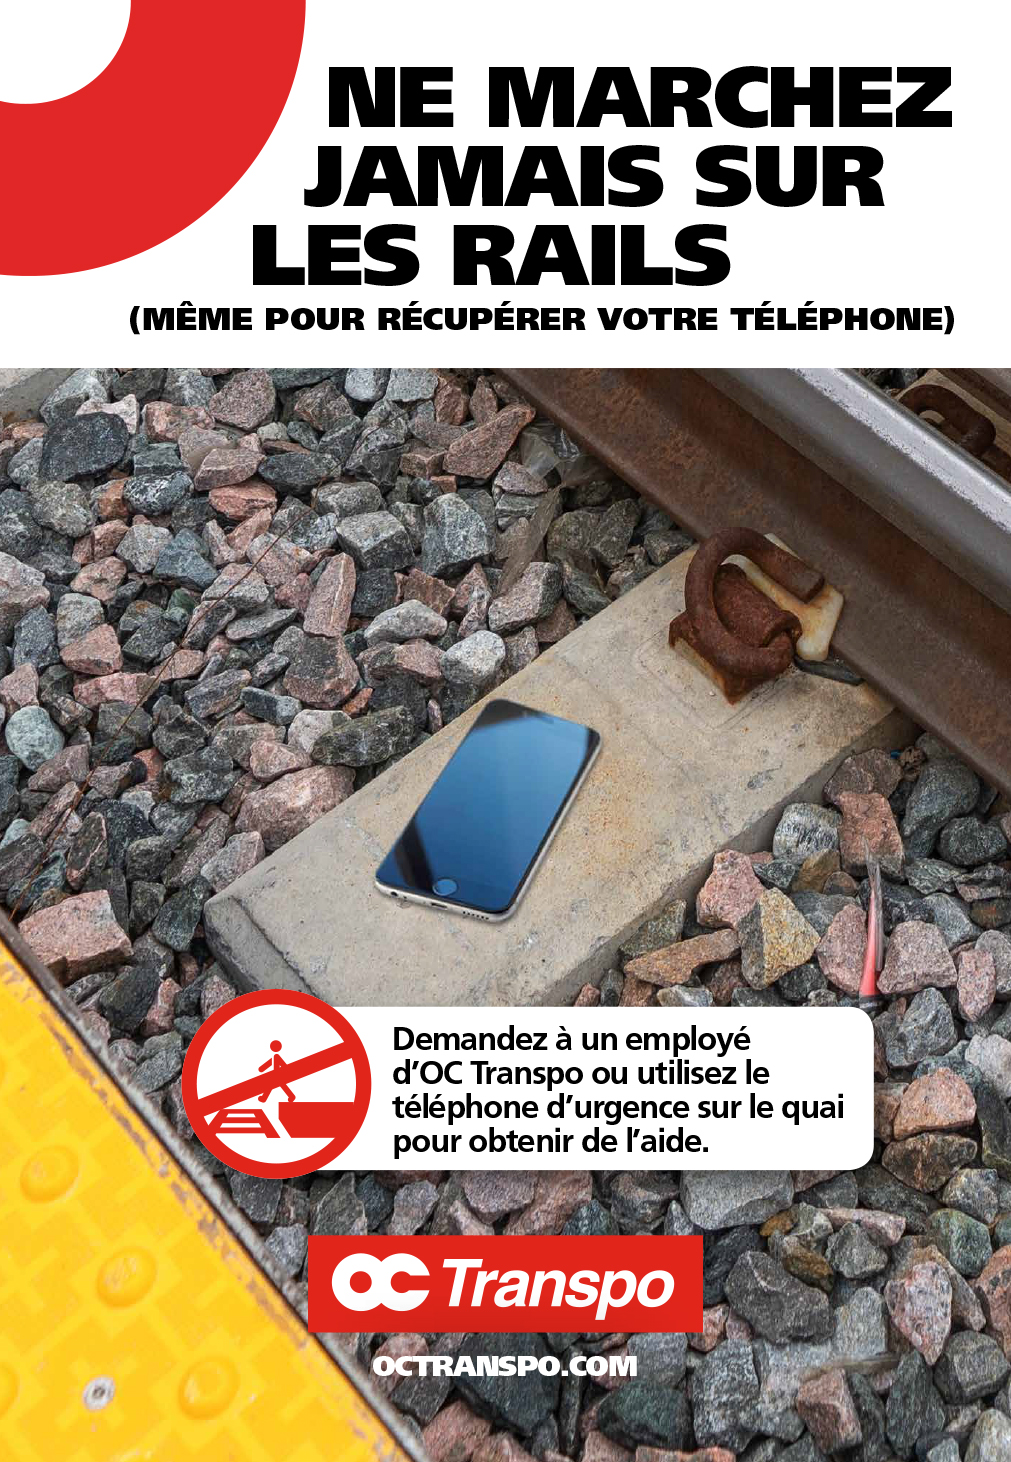 Un téléphone sur les rails. Texte sur l'image : Ne marchez jamais sur les rails (même pour récupérer votre téléphone)